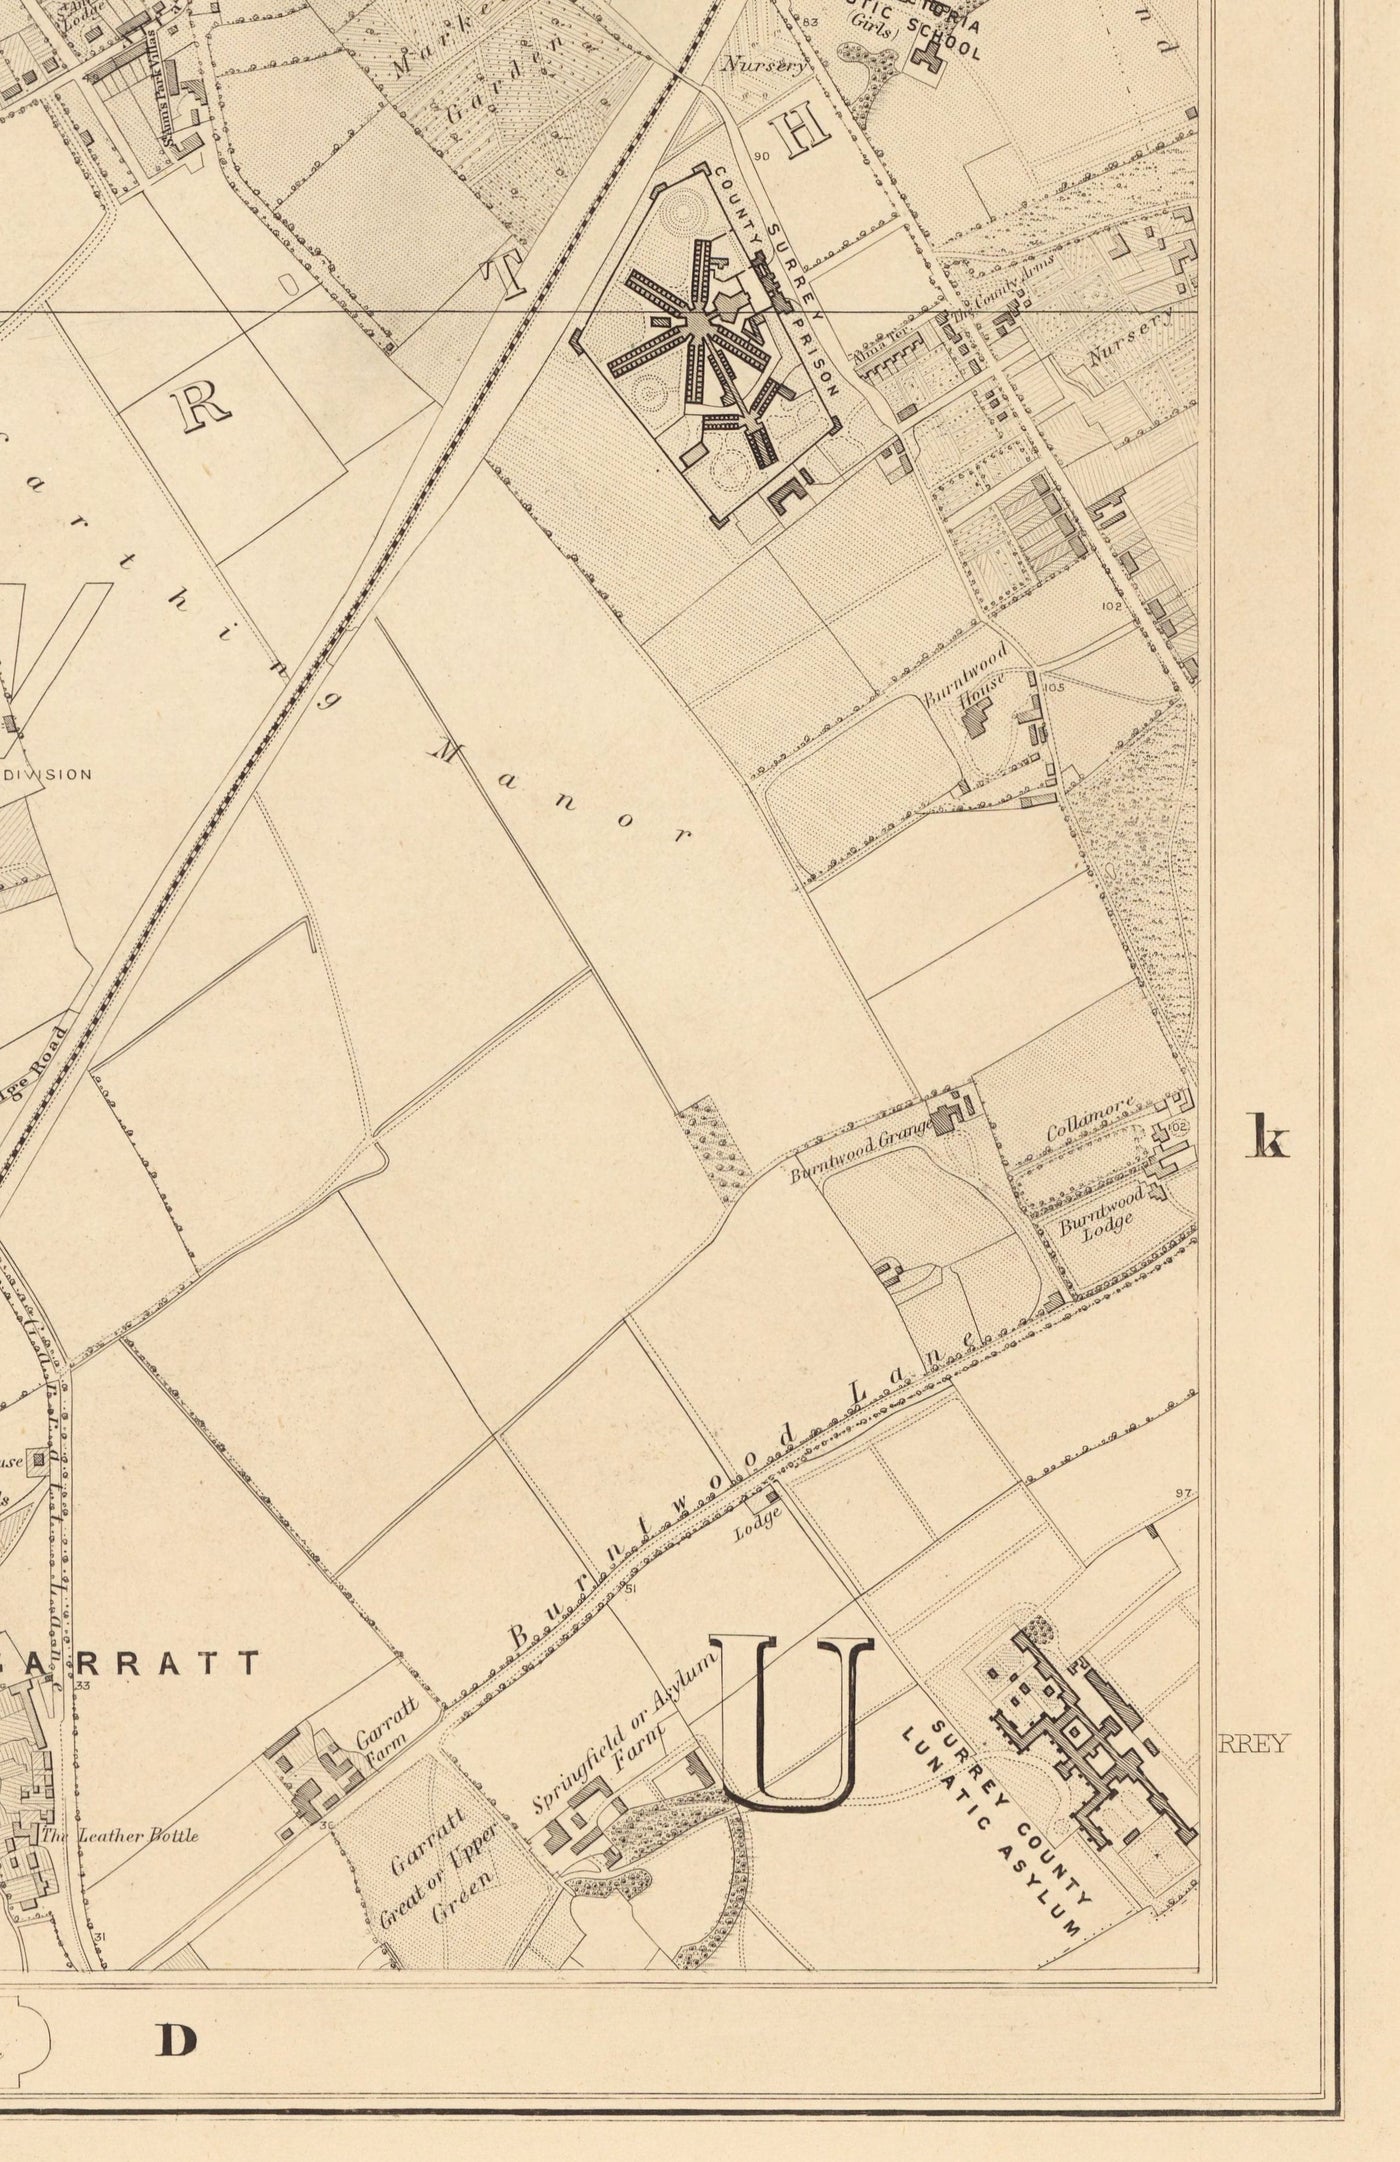 Alte Karte von South London von Edward Stanford, 1862 - Wandsworth, Wimbledon, Putney, Earlsfield, Fluss Wandle - SW15, SW18, SW19